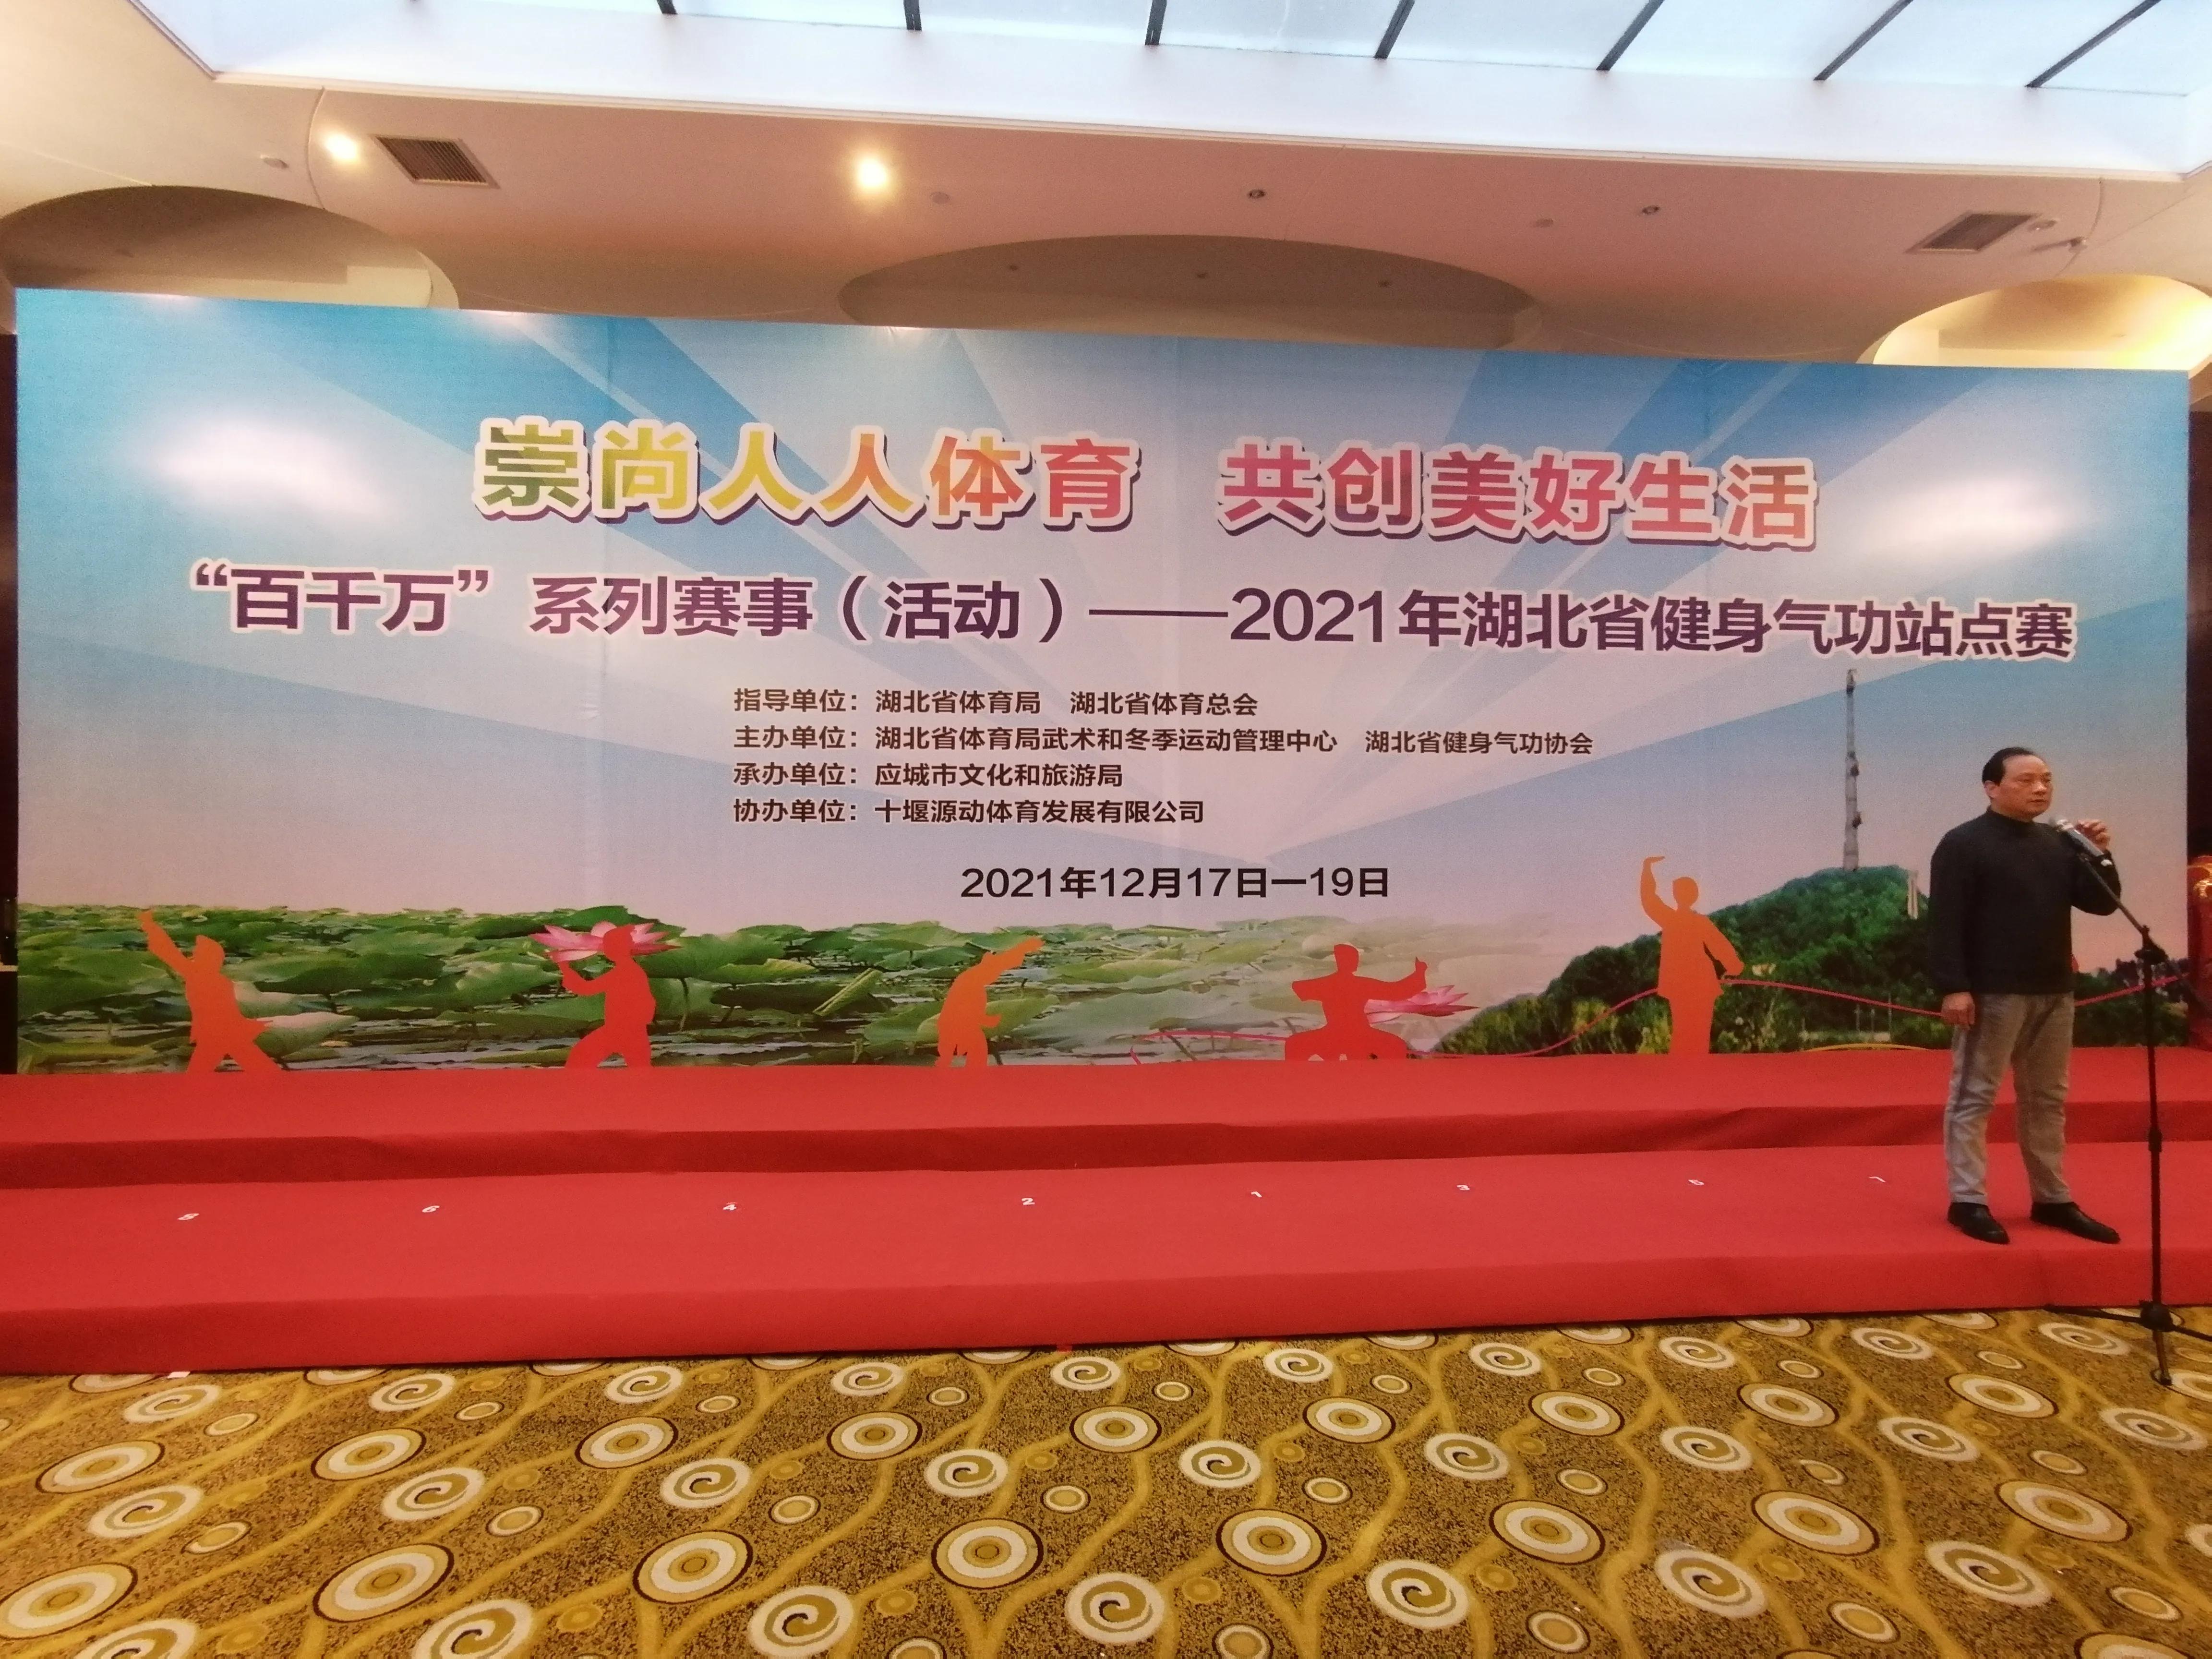 2021年湖北省健身气功站点赛襄阳市代表队成绩斐然